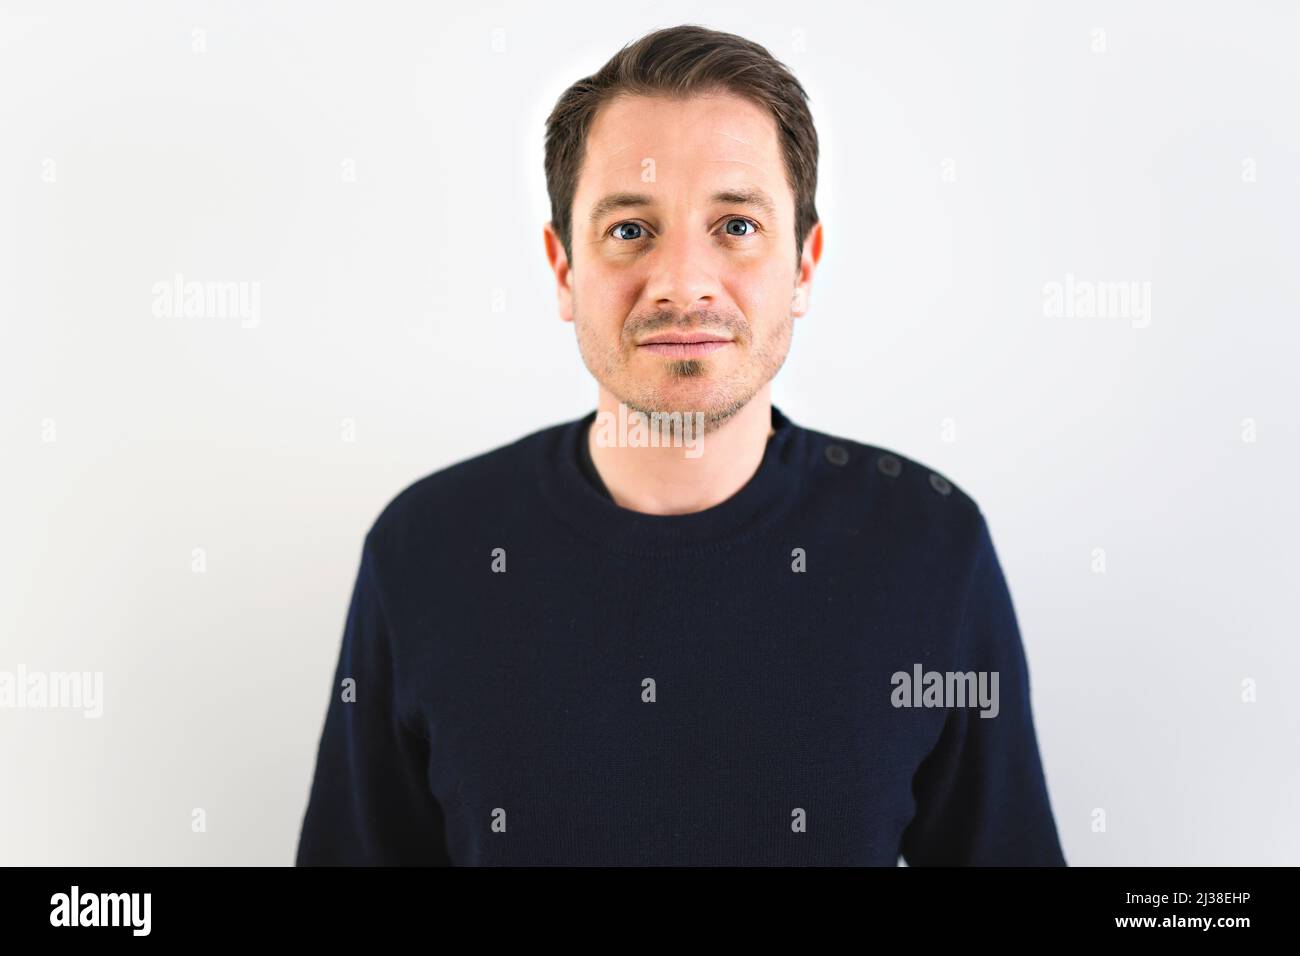 European man on studio white background portrait Stock Photo